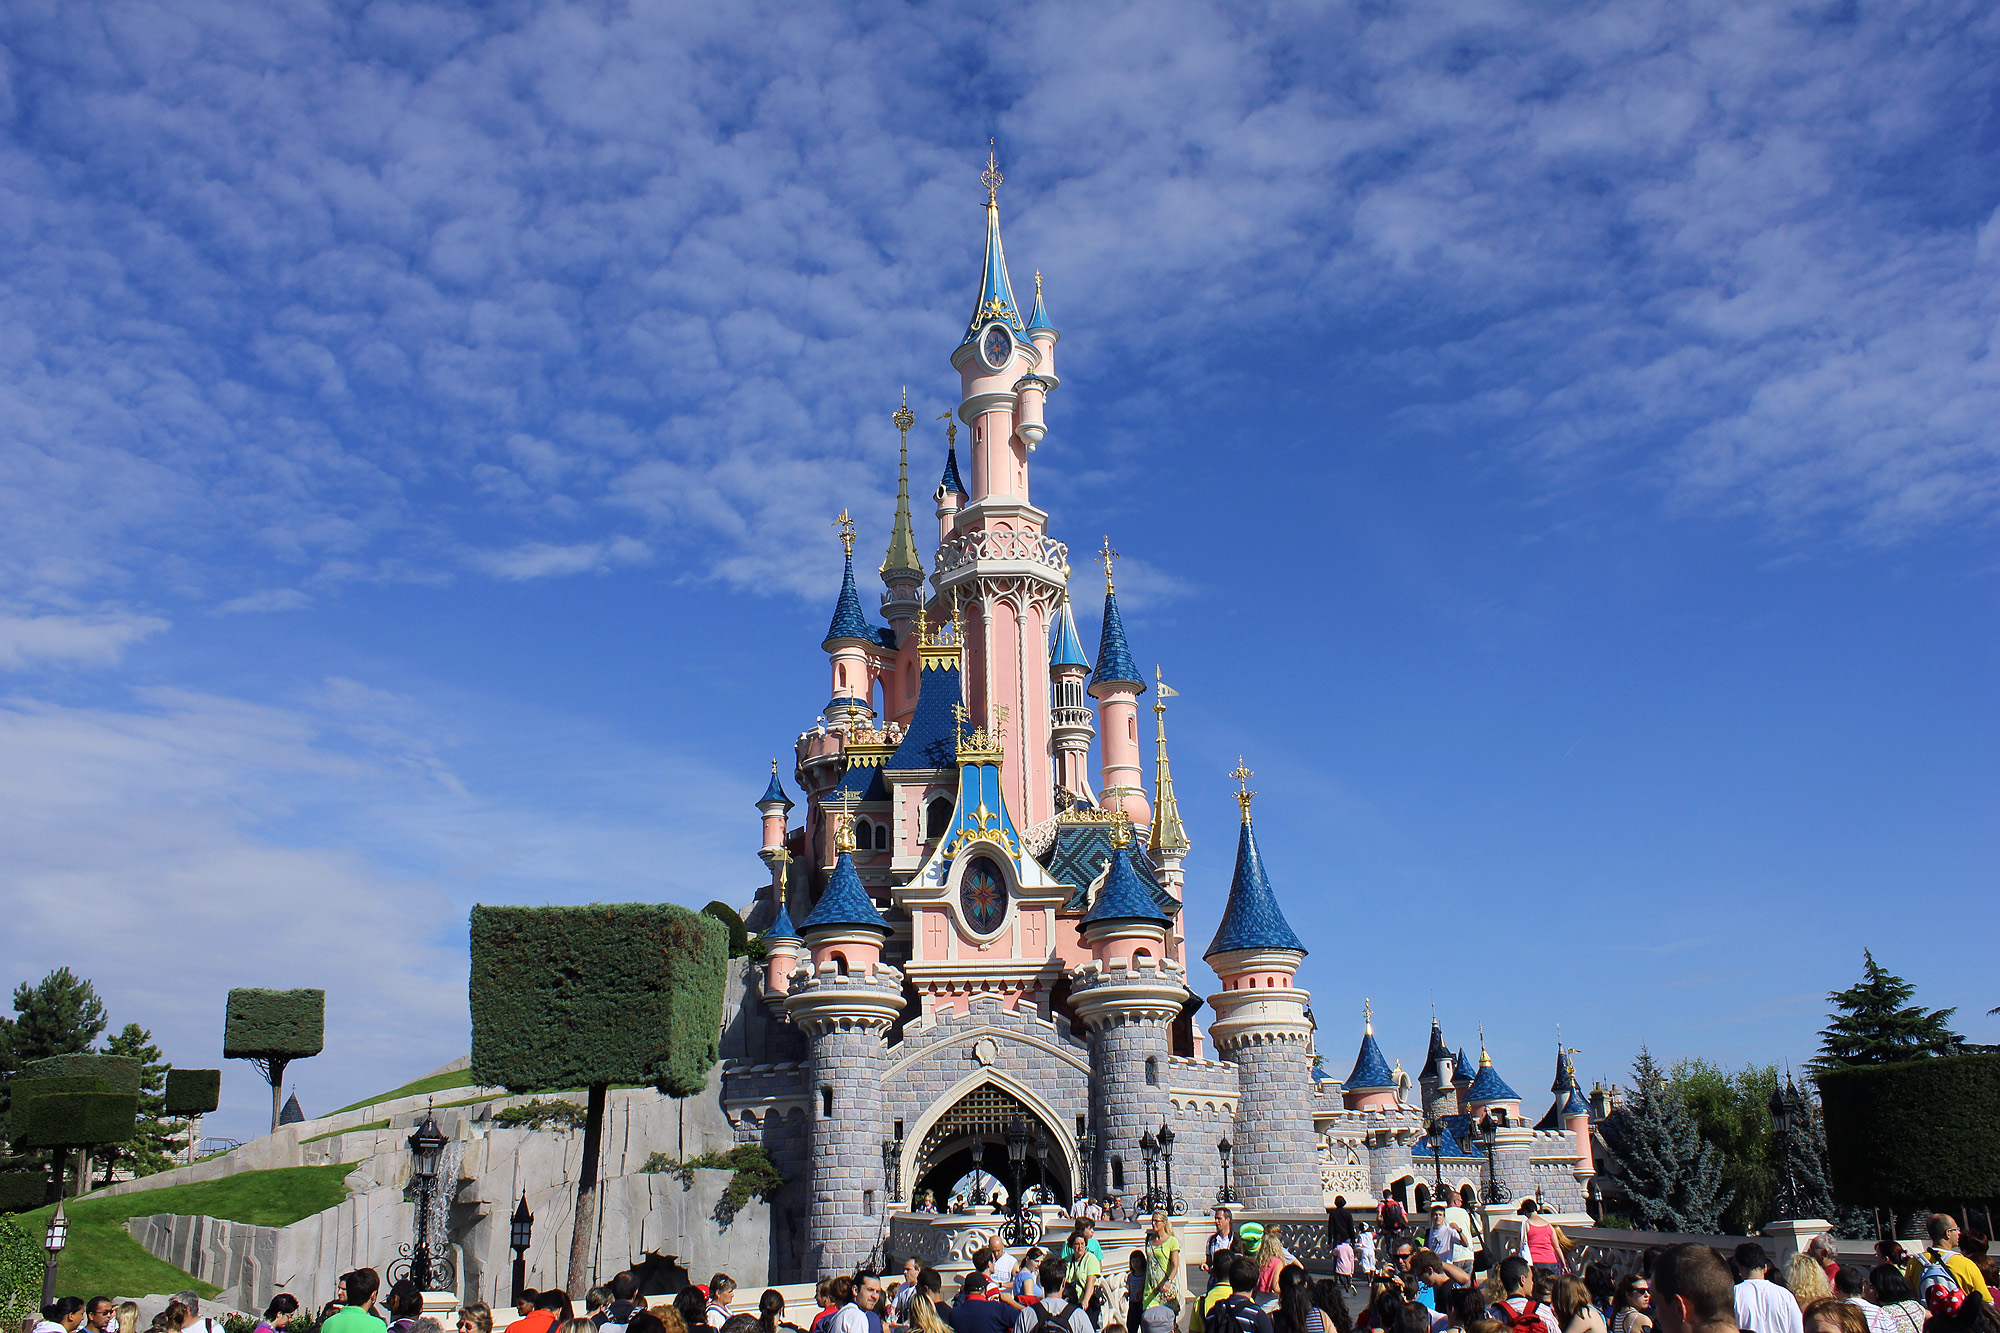 Самый большой диснейленд. Диснейленд Париж Disneyland Paris. Парижский Диснейленд замок спящей красавицы. Парк Уолт Дисней в Париже. Диснейленд Париж Диснейленд парк.